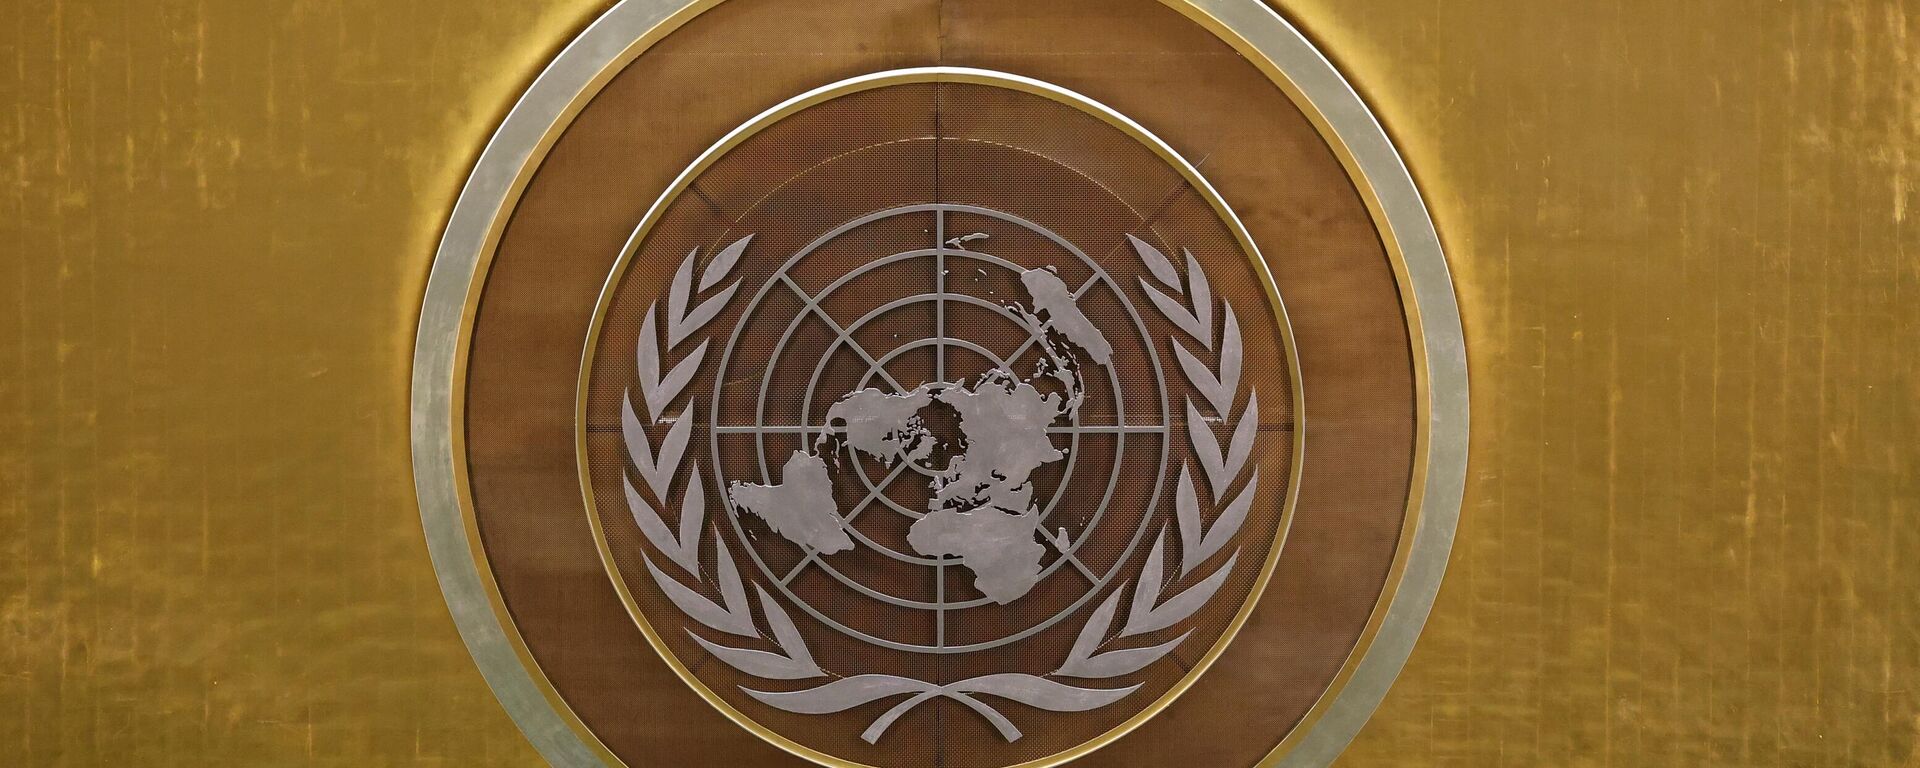 Biểu tượng của Liên hợp quốc (LHQ) tại Đại hội đồng Liên hợp quốc (LHQ) ở New York. - Sputnik Việt Nam, 1920, 08.06.2022